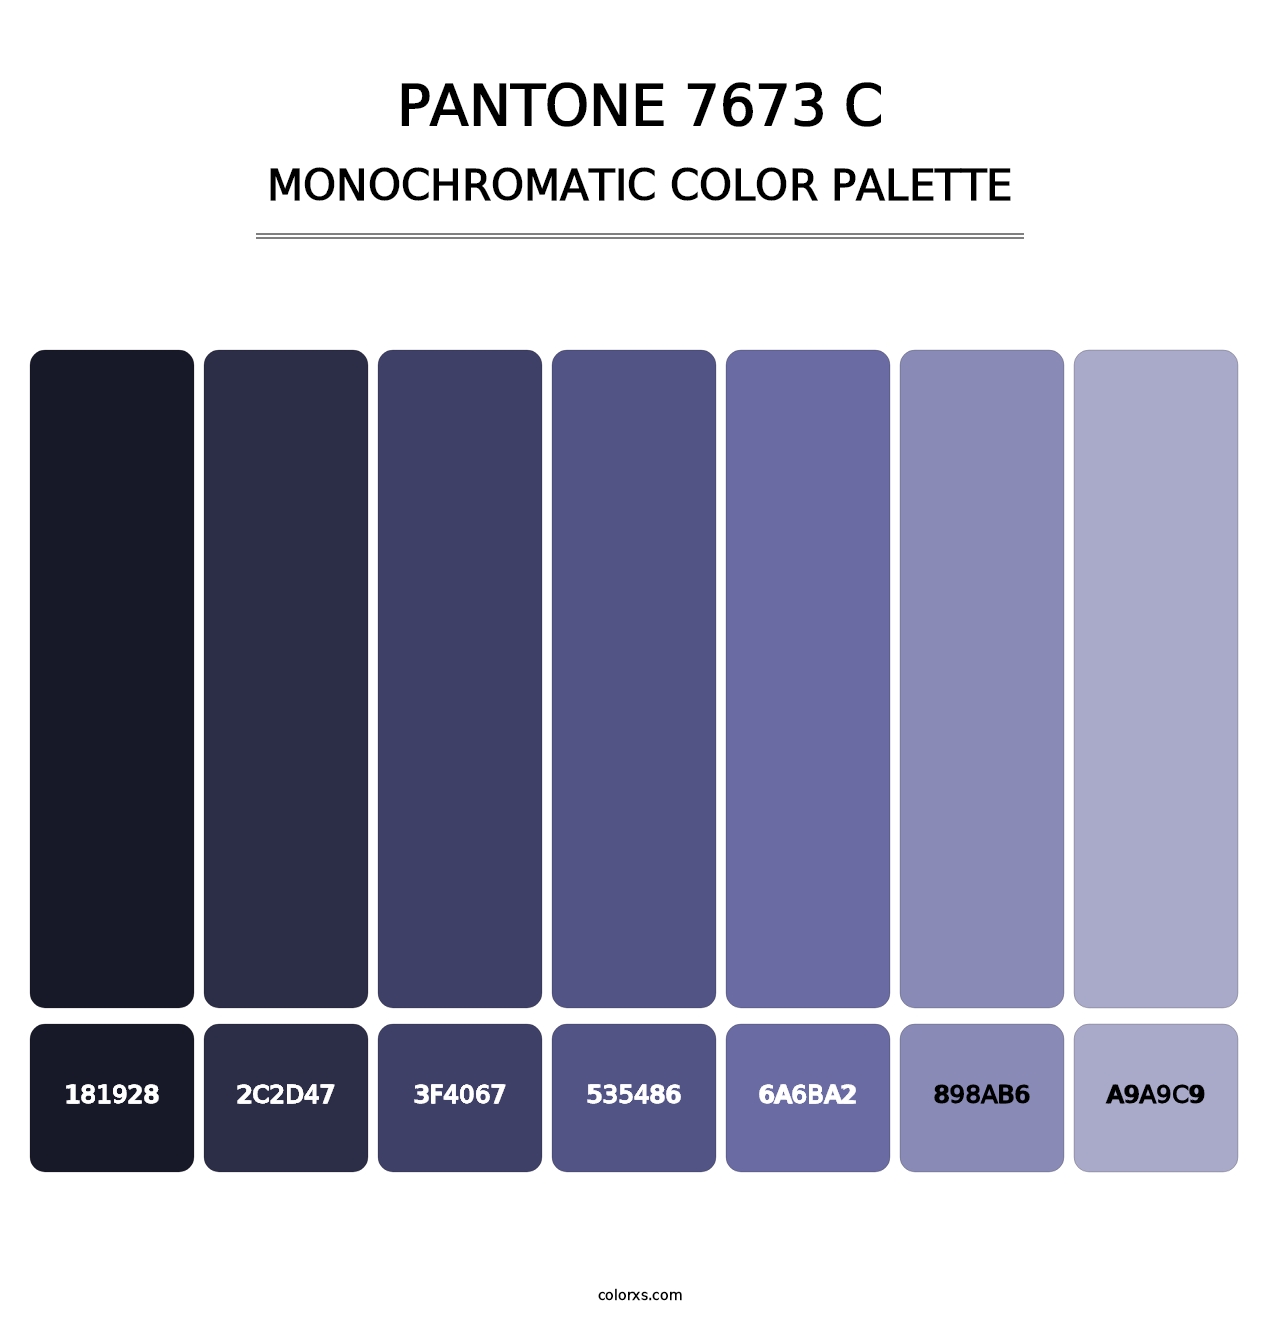 PANTONE 7673 C - Monochromatic Color Palette